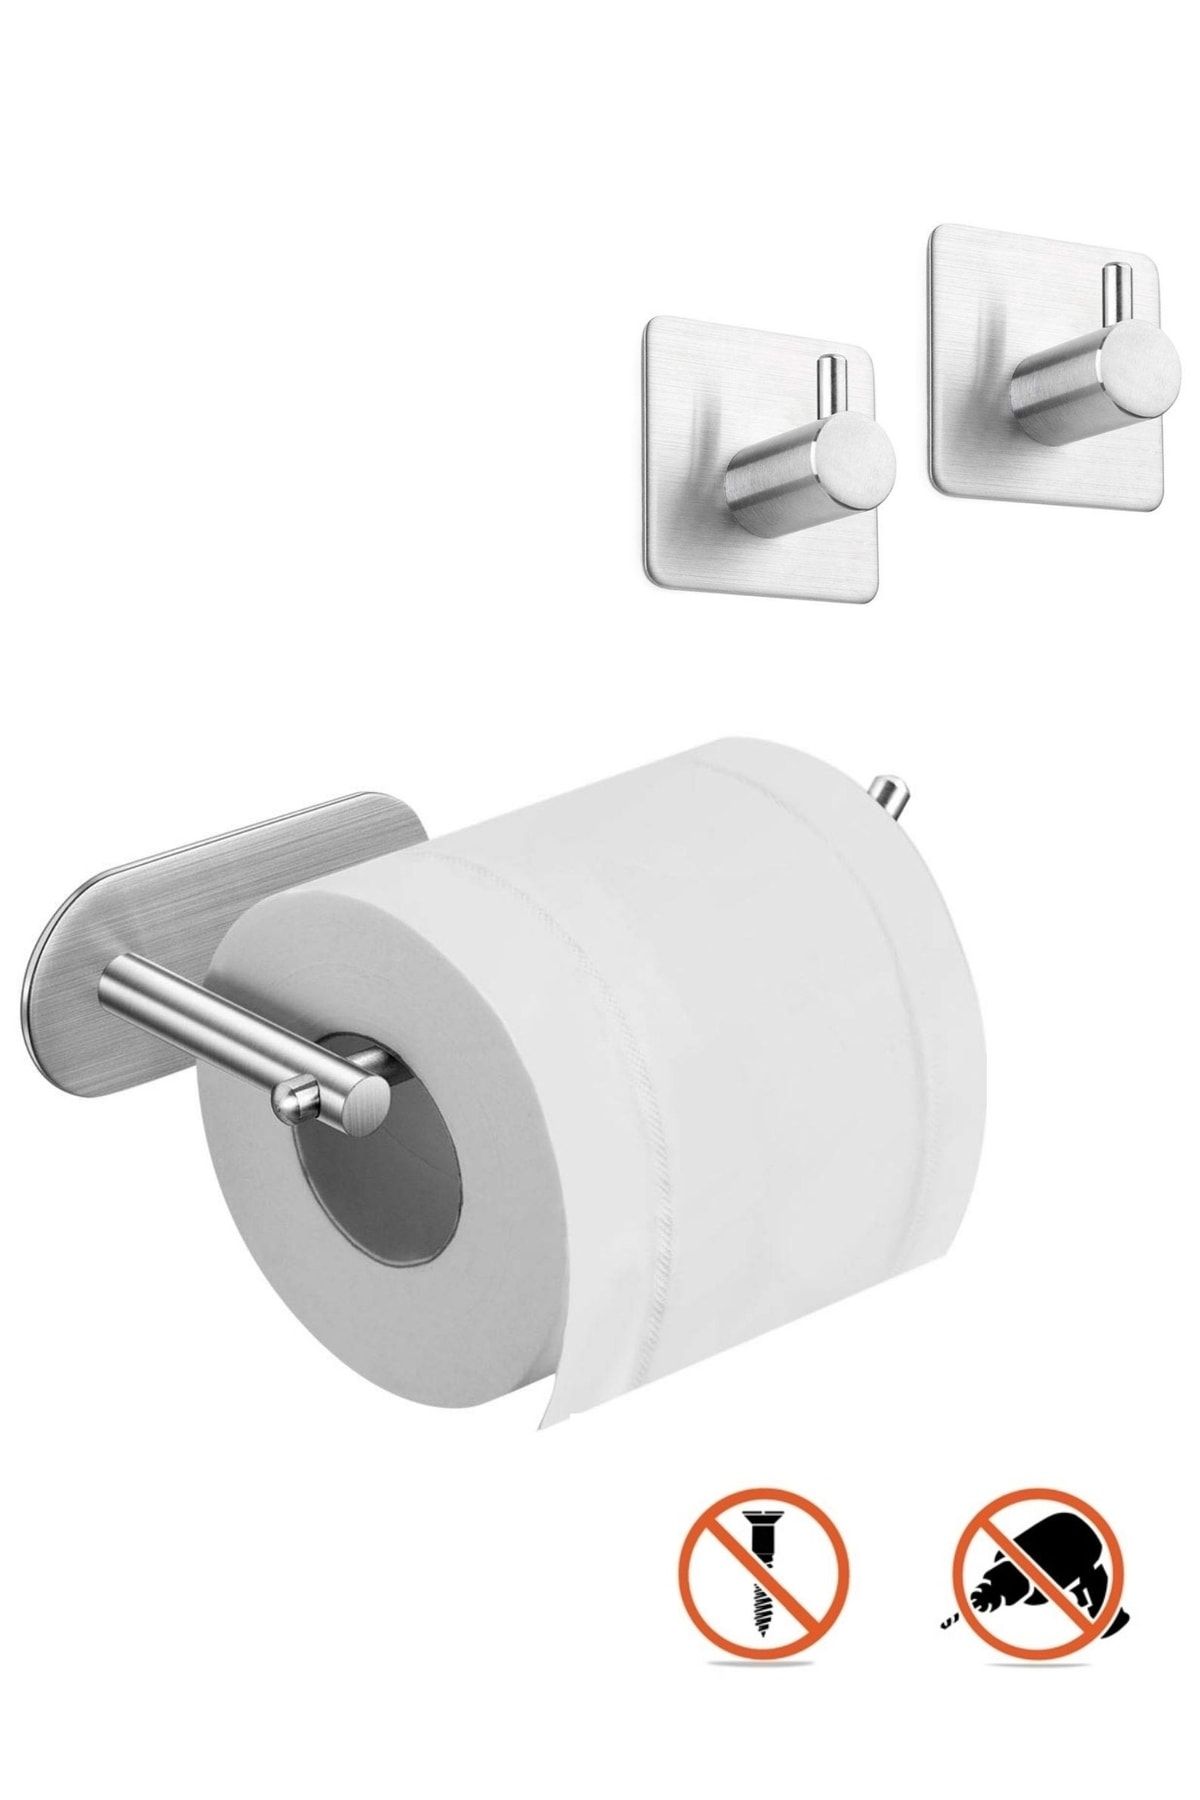 DELTAHOME Paslanmaz Çelik Set Tuvalet Kağıtlığı - 2 Adet Havluluk - Yapışkanlı Bant Sistem